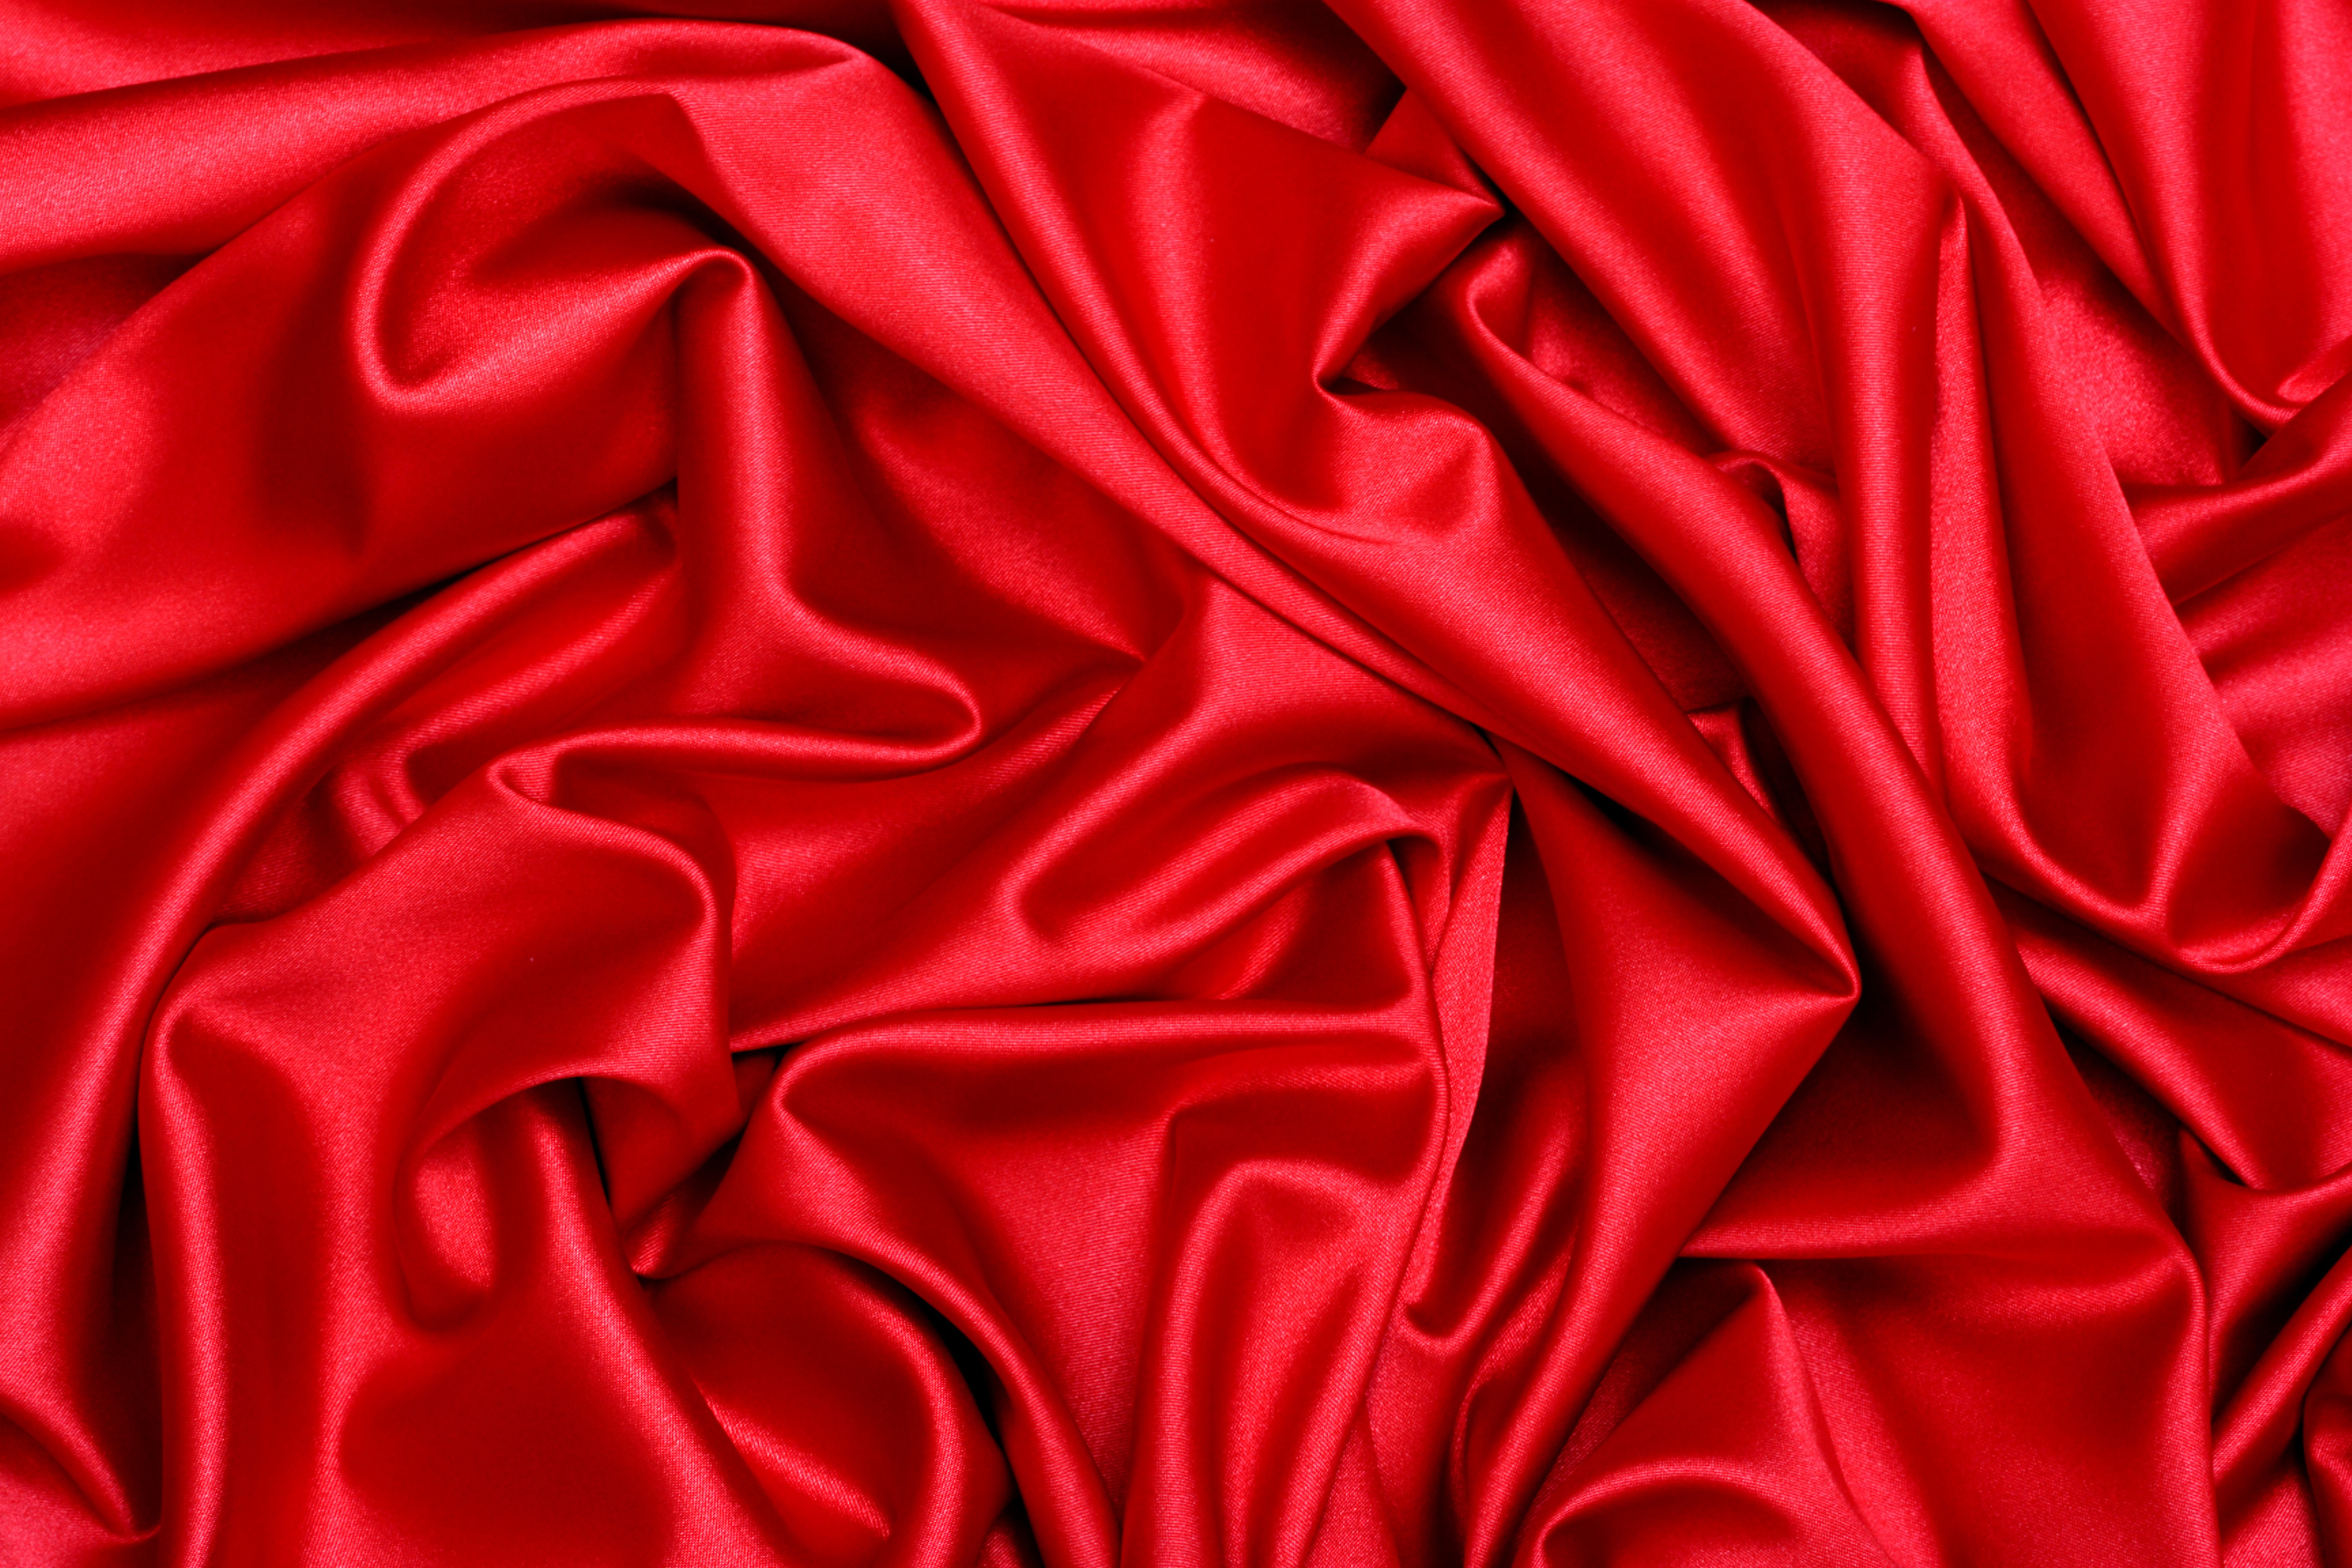 красная ткань, шелк, скачать фото, фон, текстура, red satin texture background